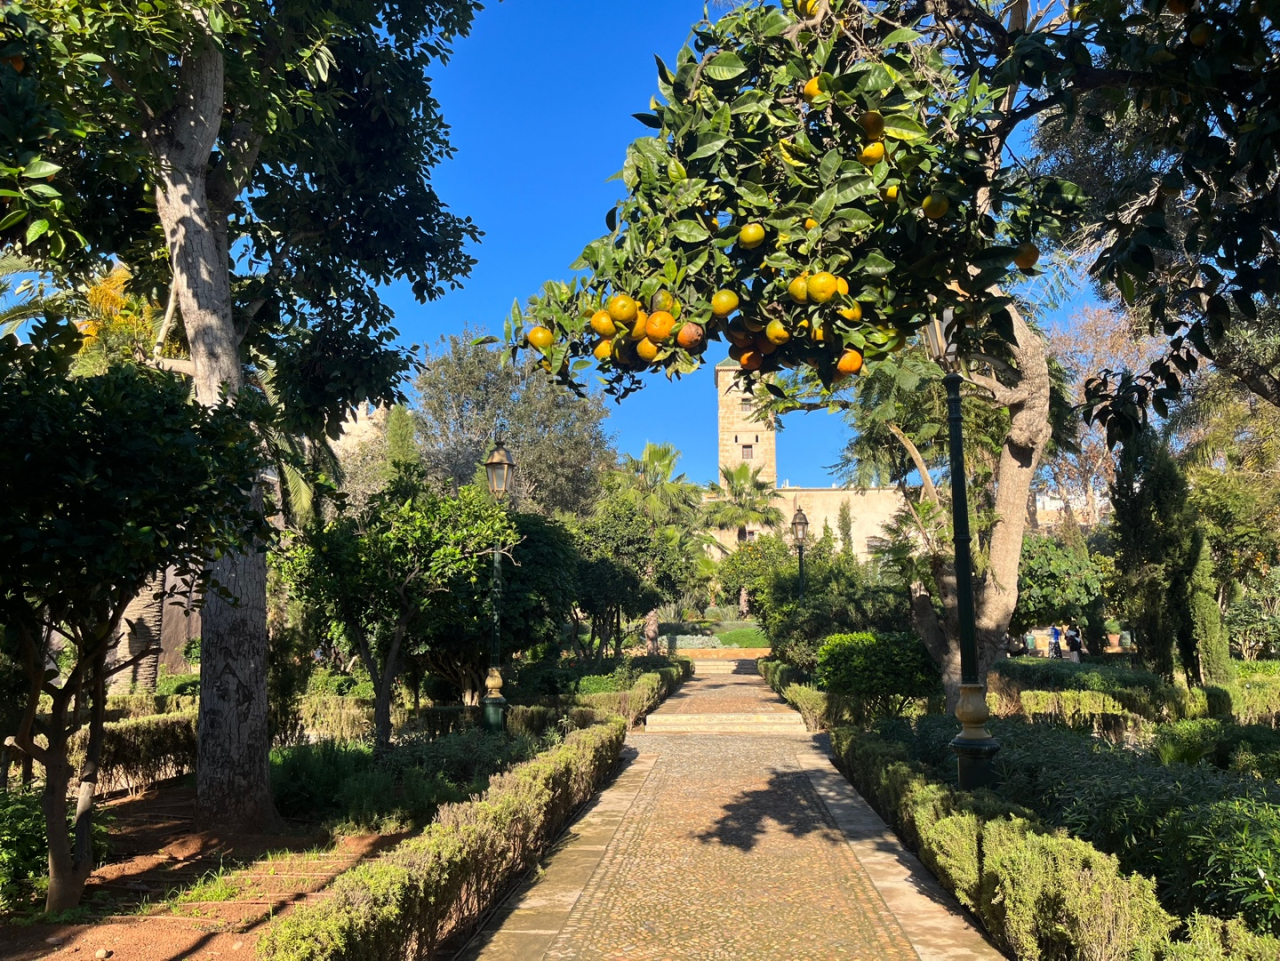 모로코 라바트의 안달루시아 정원. 프랑스 보호령 기간(1912-1956)에 프랑스인이 설계한 이 정원은 Kasbah des Oudaias 내에 있습니다. 감귤류 나무, 높은 야자수, 활기찬 부겐빌레아로 가득한 이곳은 멋진 그늘진 휴양지를 만듭니다.